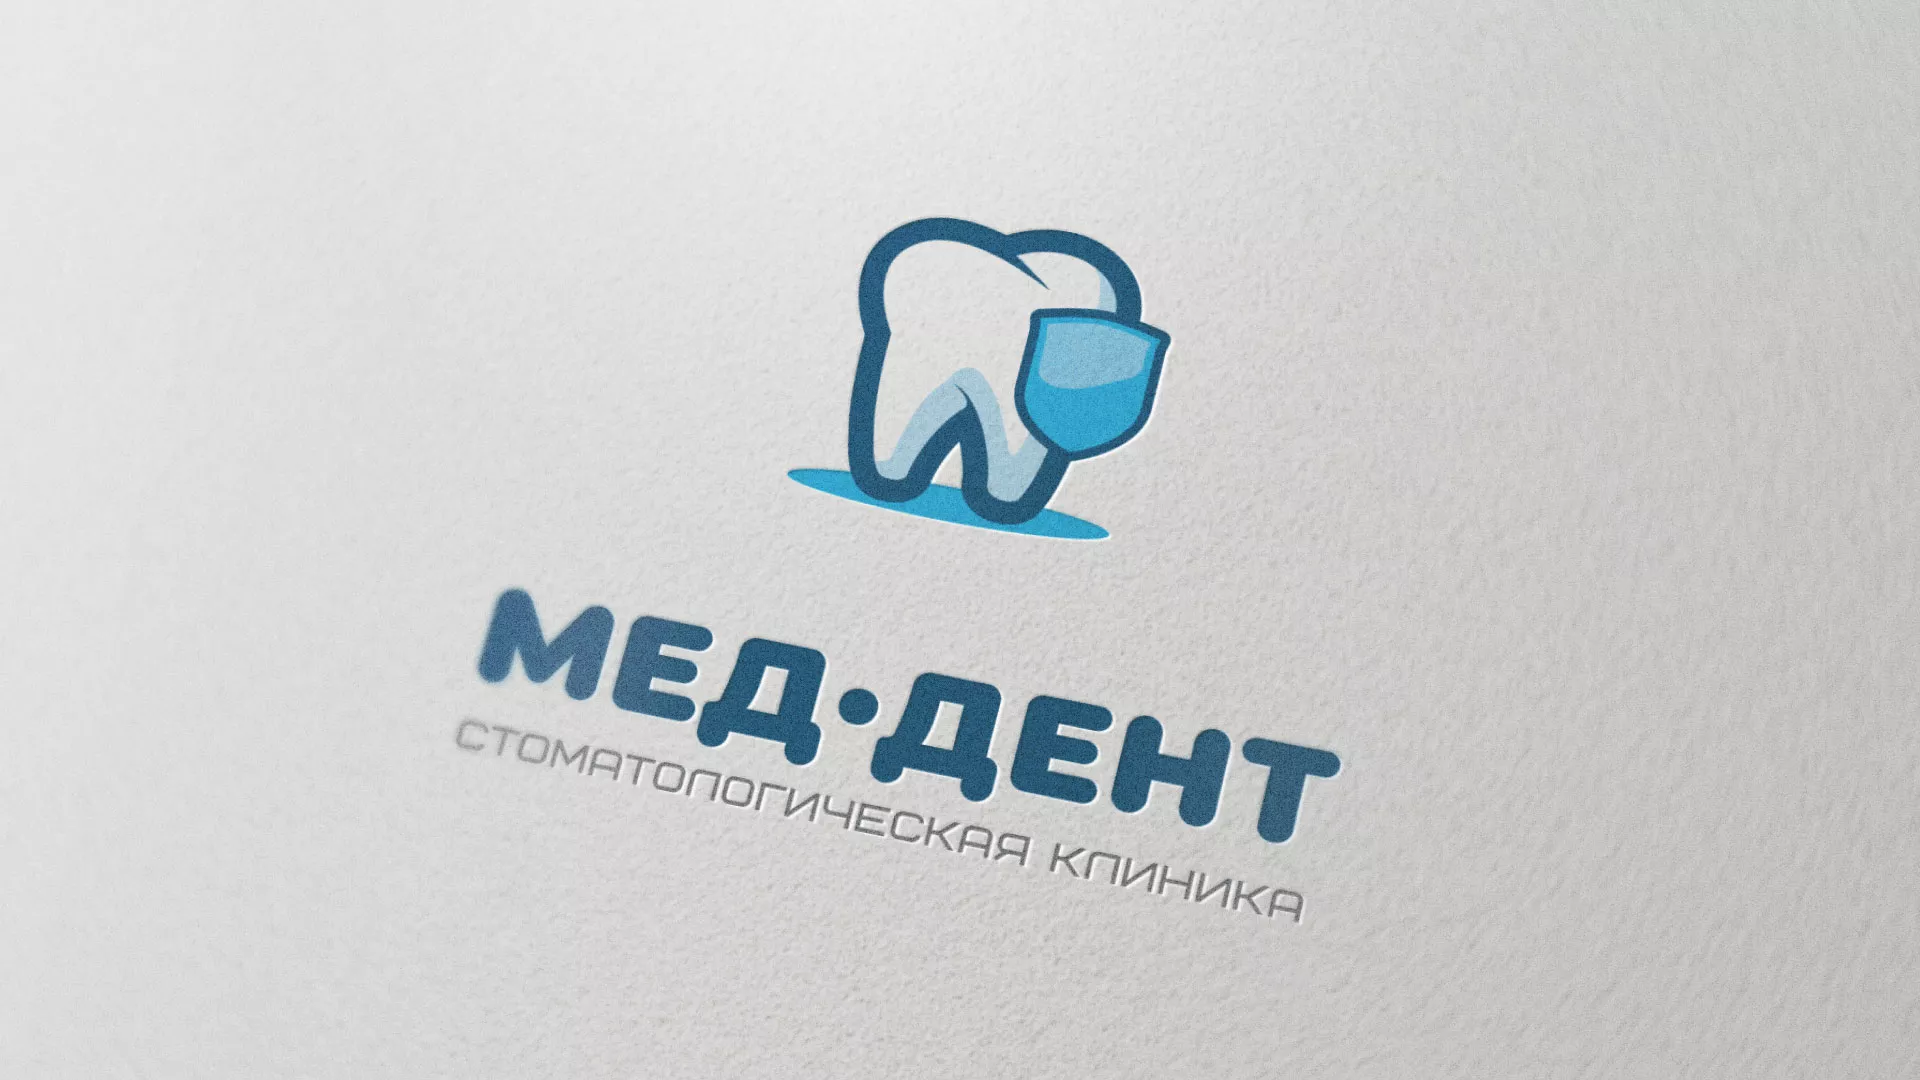 Разработка логотипа стоматологической клиники «МЕД-ДЕНТ» в Пудоже